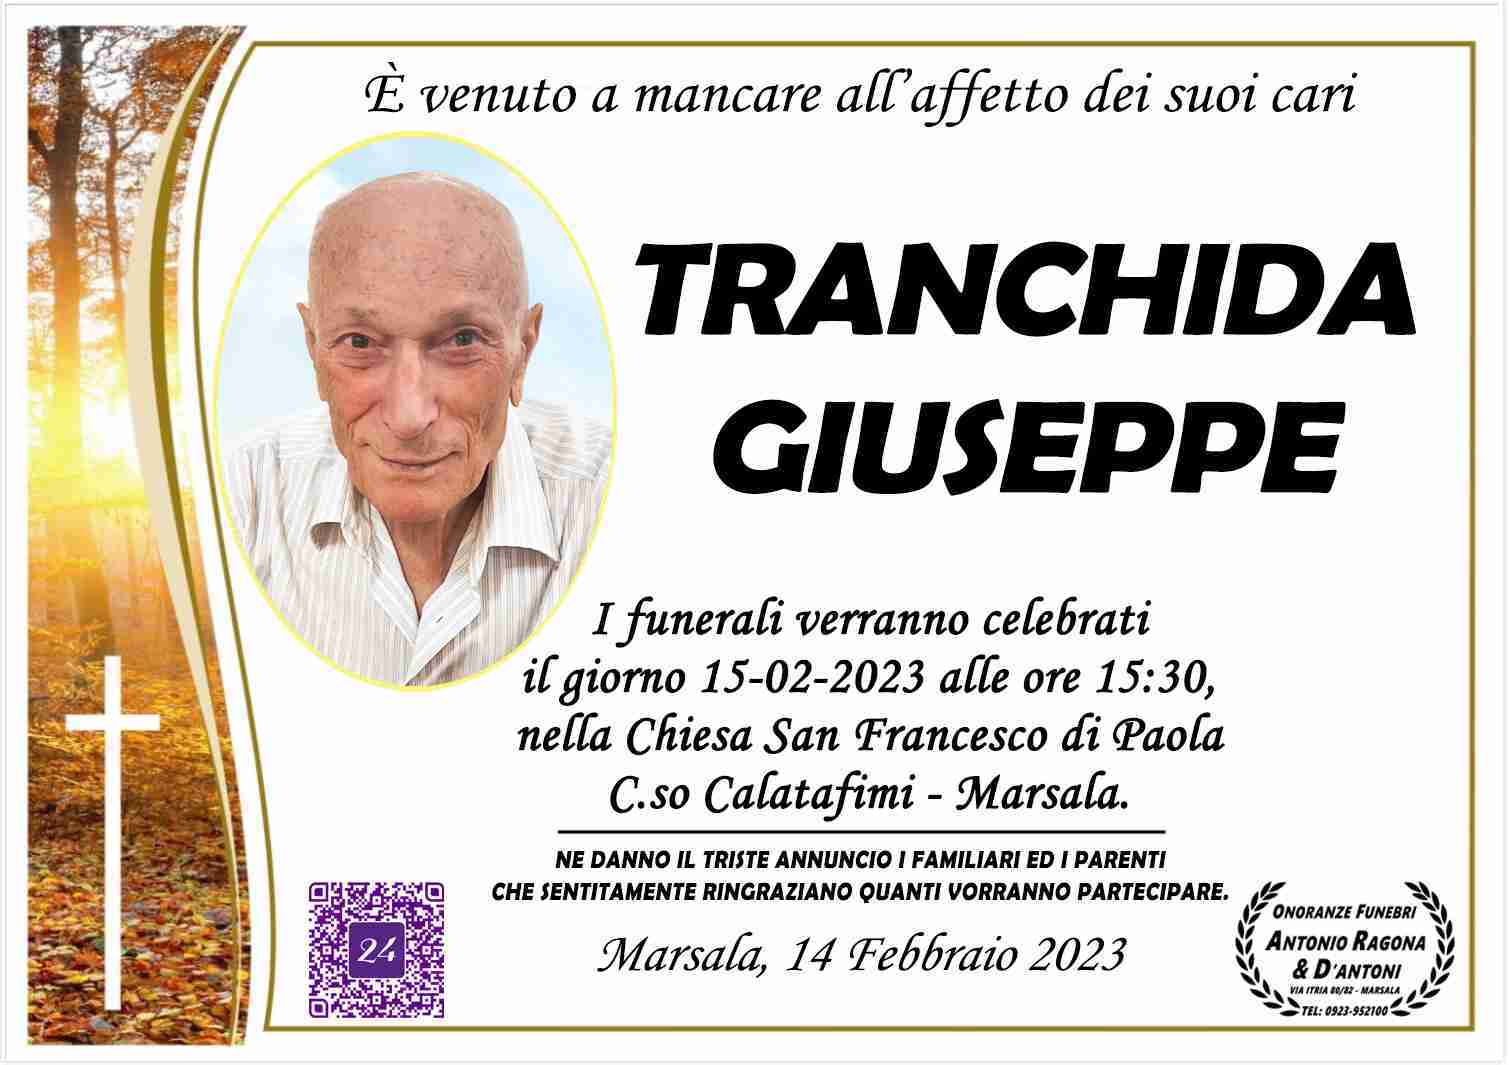 Giuseppe Tranchida